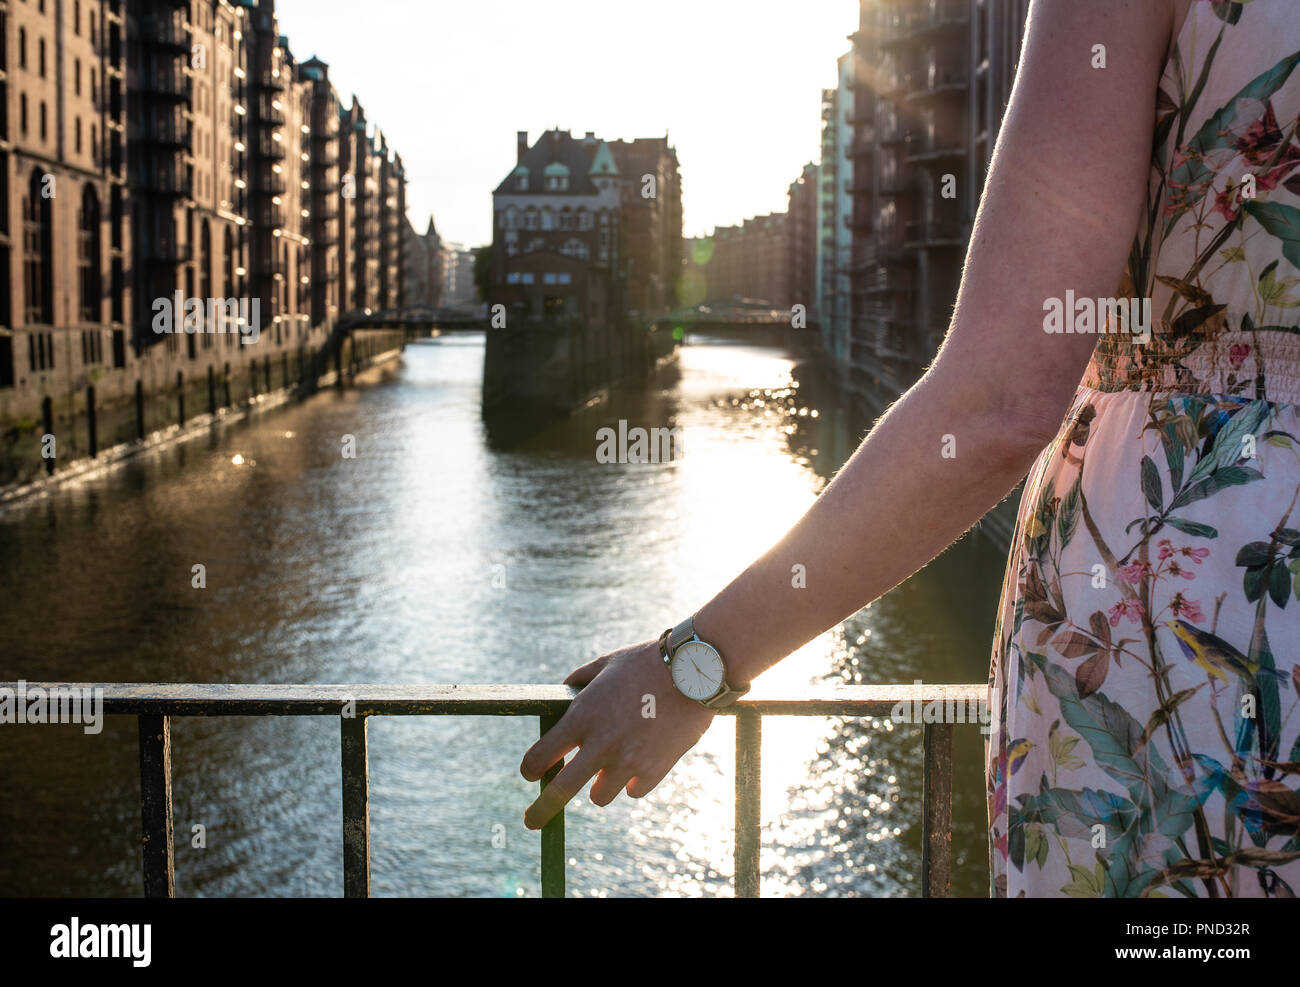 Vista trasera de la mujer descansa su brazo sobre el puente del canal vituperan y viejos almacenes en Hamburgo Foto de stock